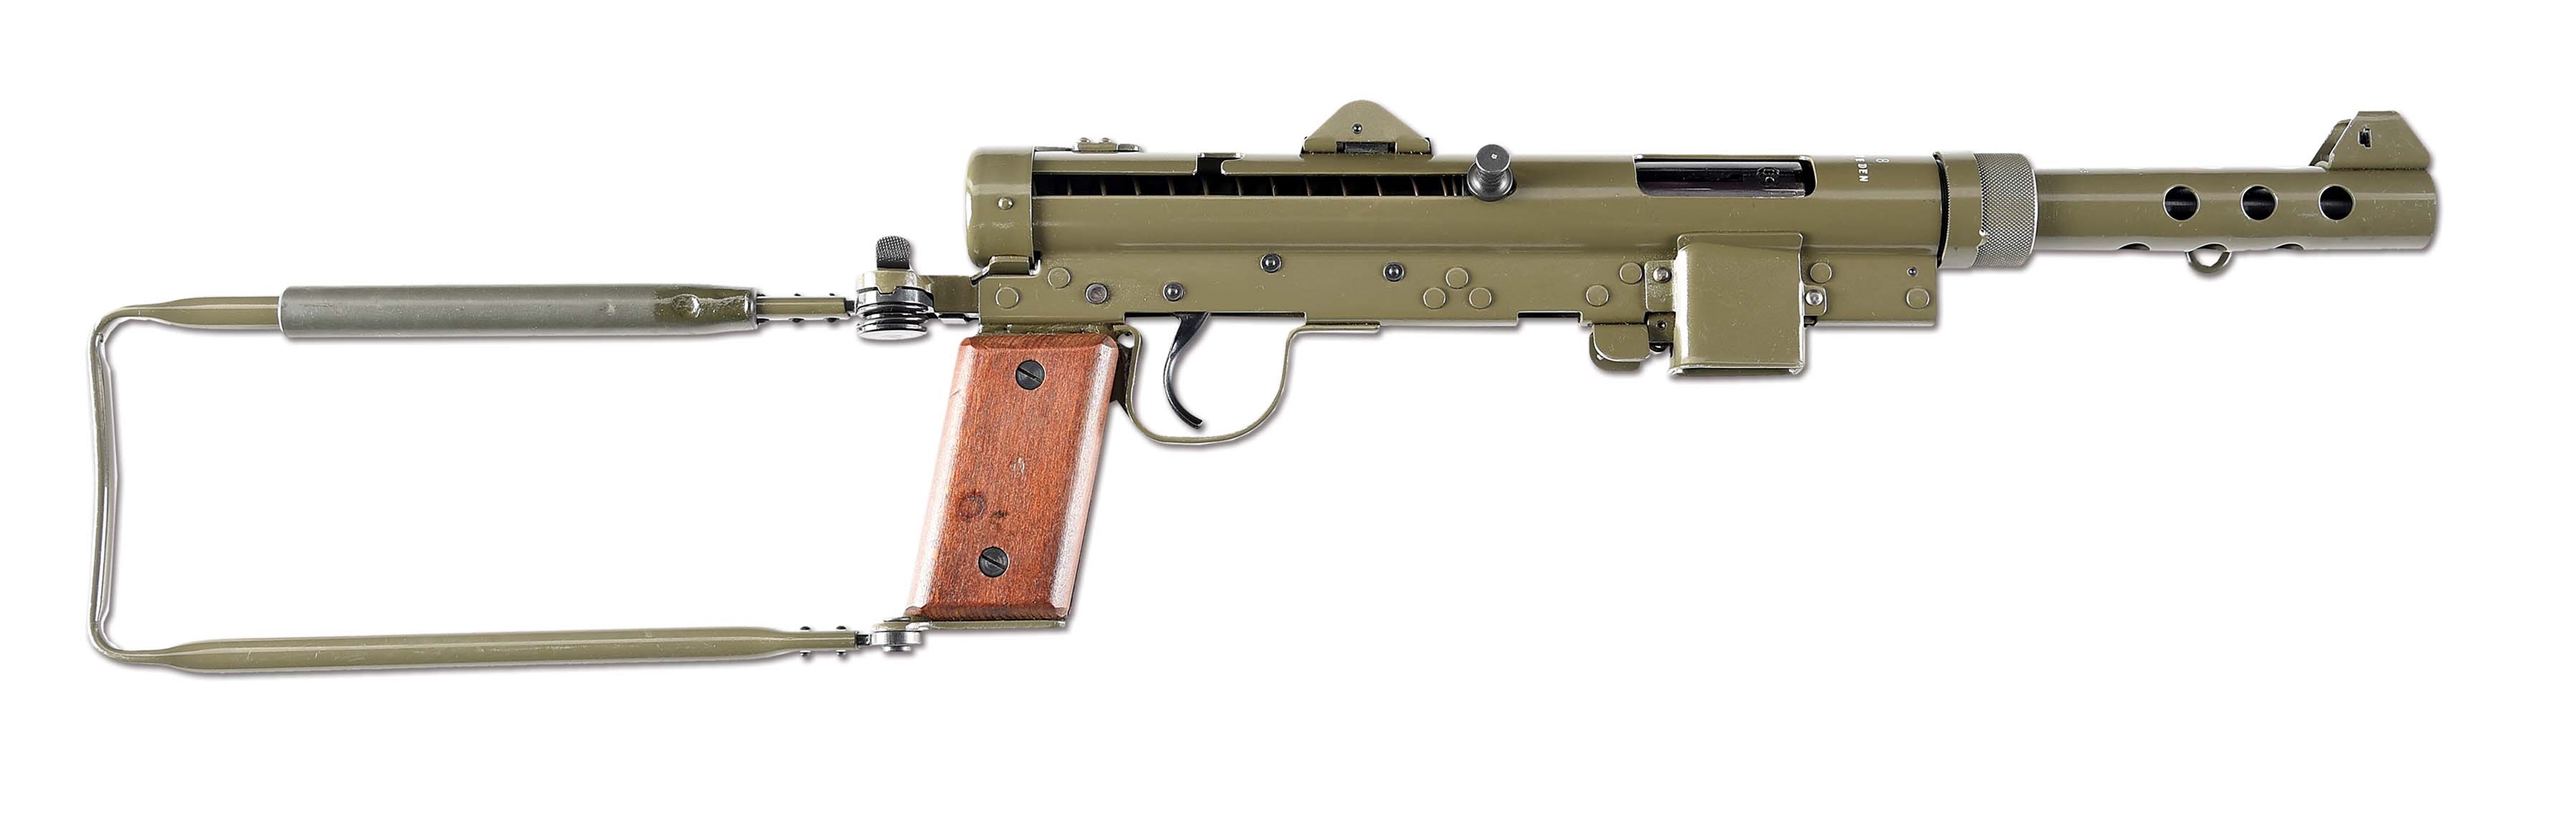 (N) EXTREMELY FINE CARL GUSTAF MODEL M/45B SUBMACHINE GUN (CURIO & RELIC).